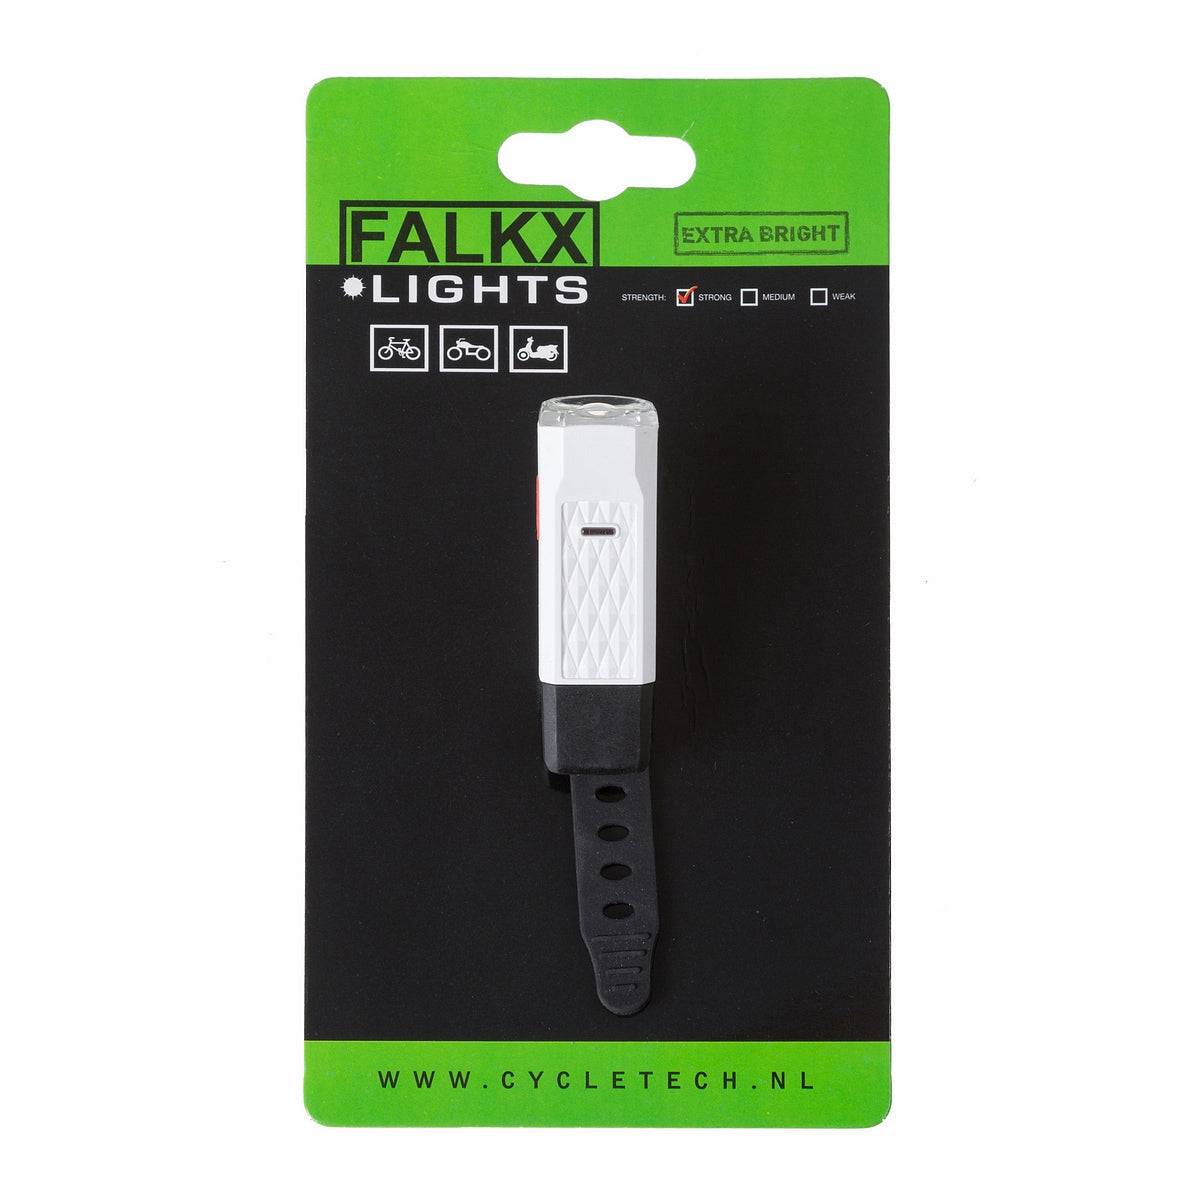 LED FALKX MINI FIERIO. USB ricaricabile (pacchetto sospeso).